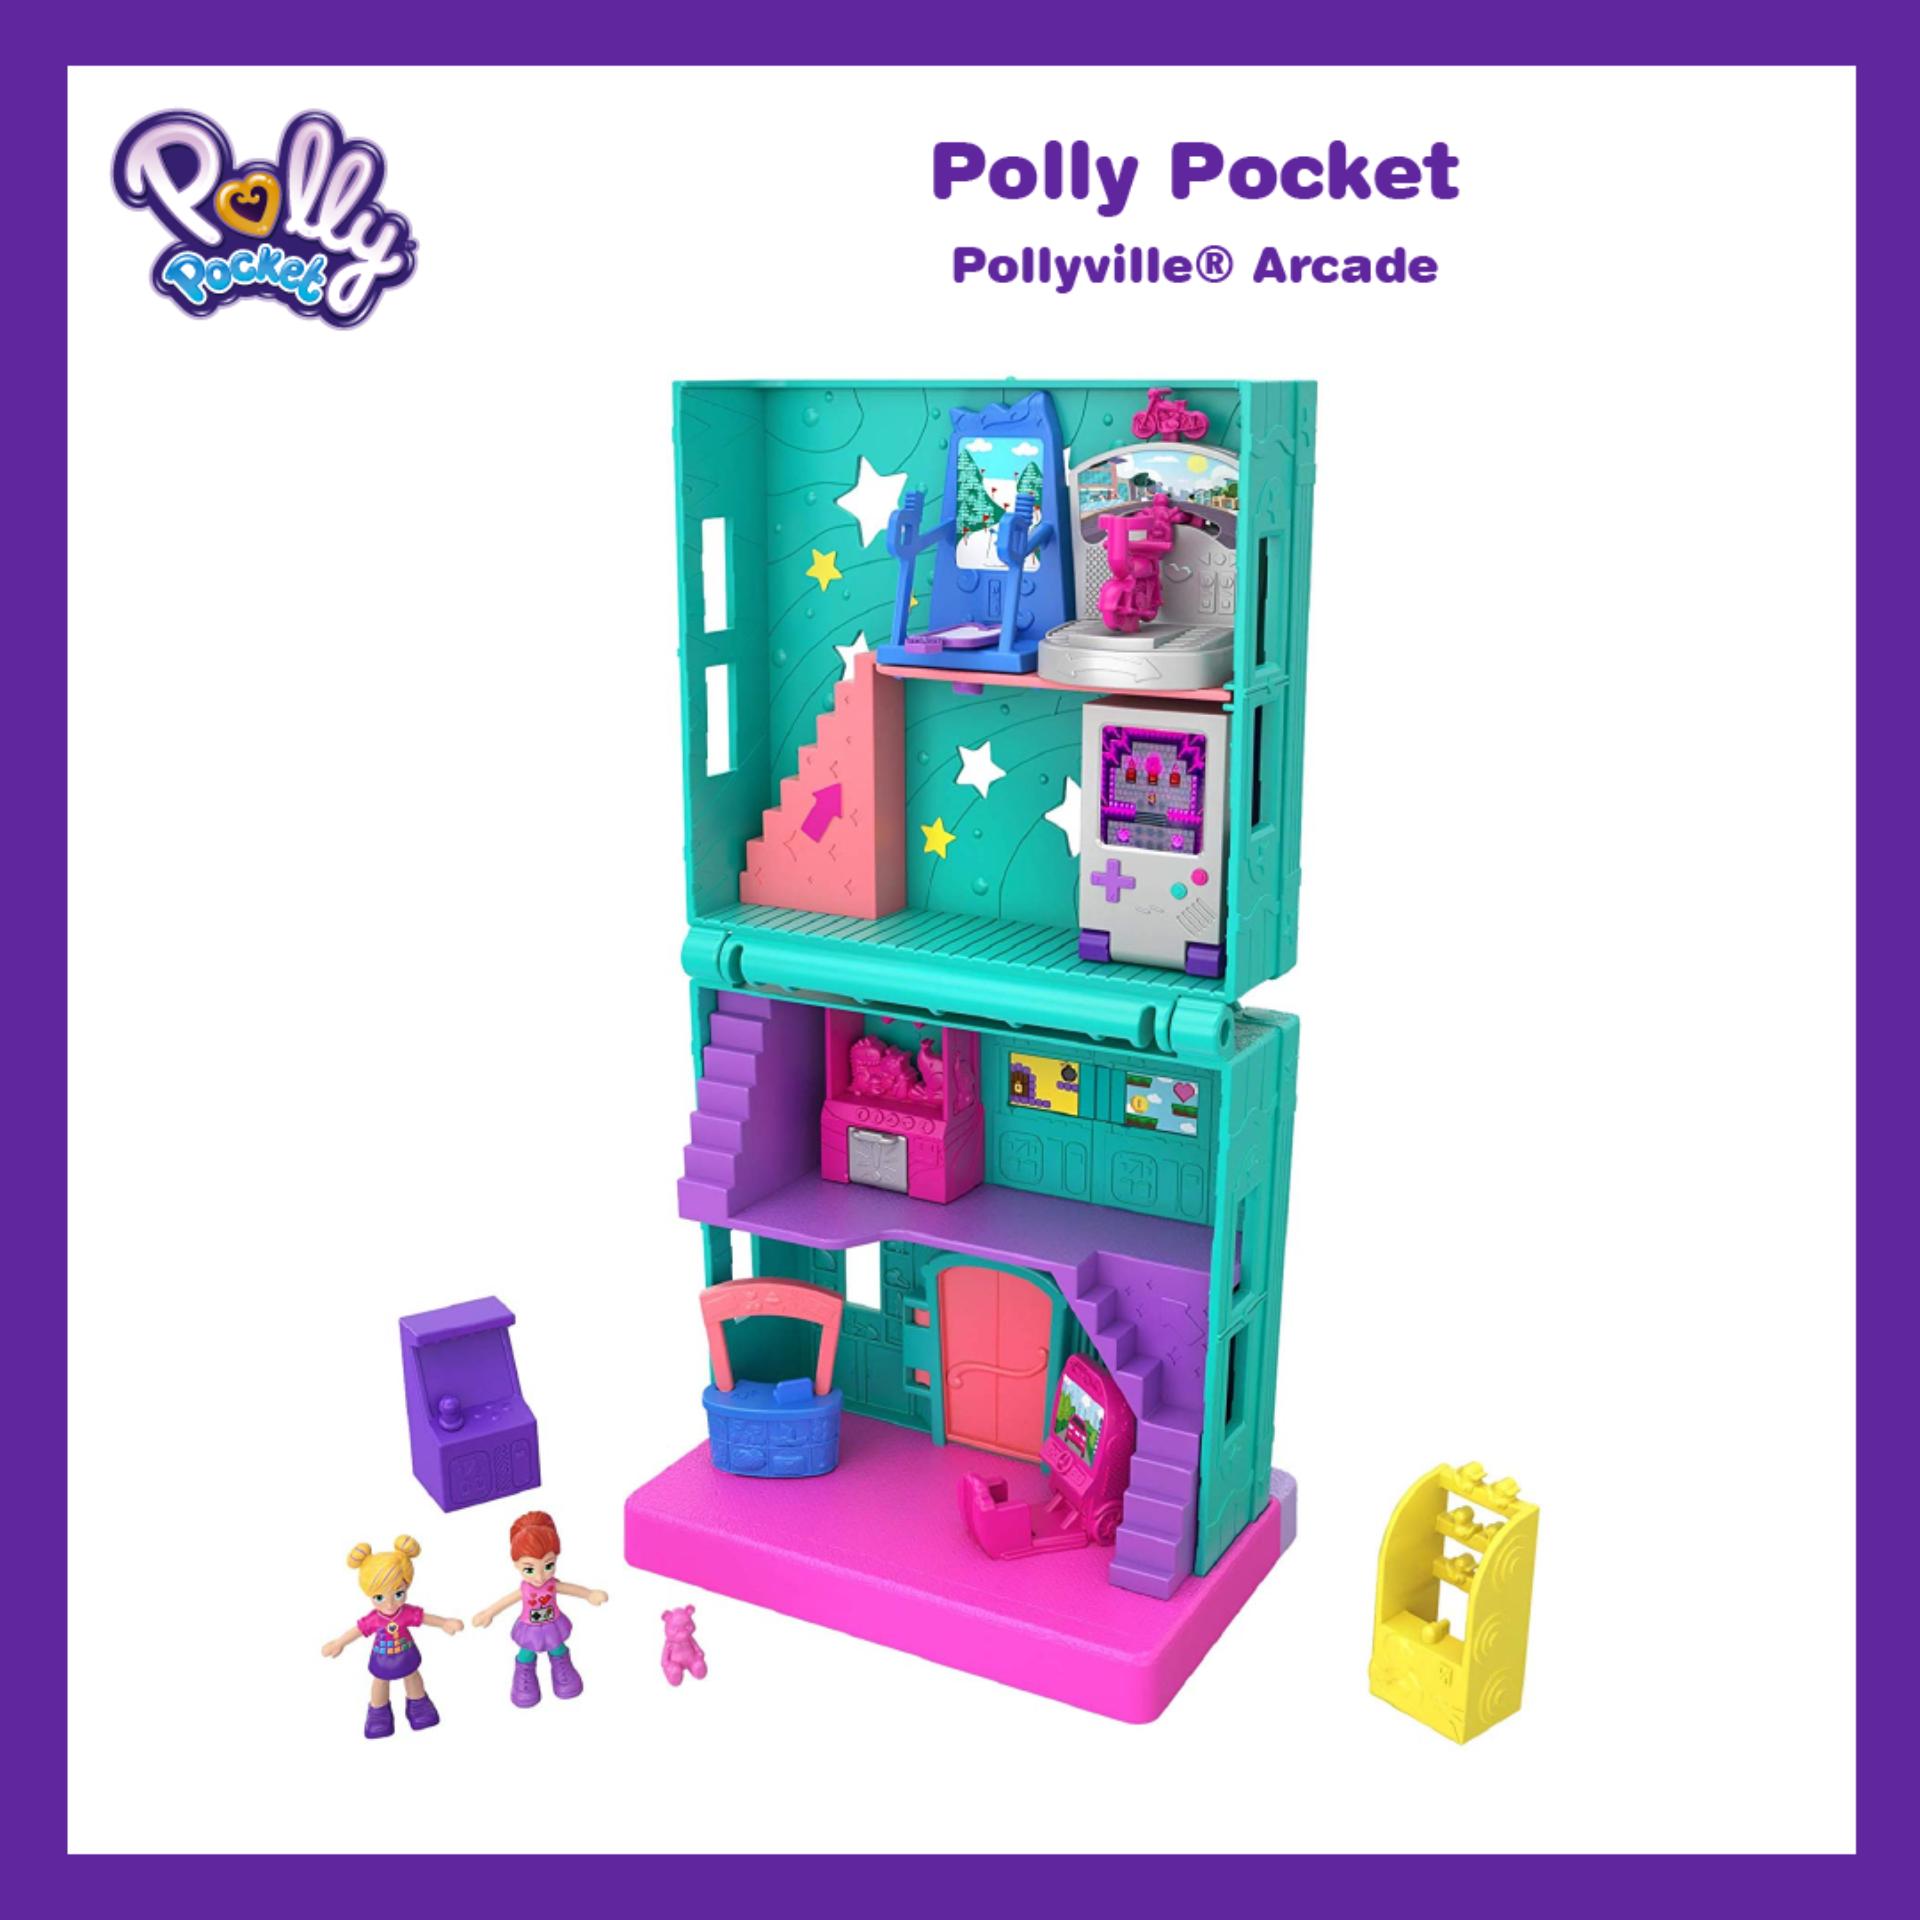 Polly Pocket® Pollyville® Arcade ตุ๊กตา พอลลี่ พ็อคเก็ต พอลลี่วิลล์ อาร์เคด ร้านเกม ของเล่น ของเล่นเด็ก